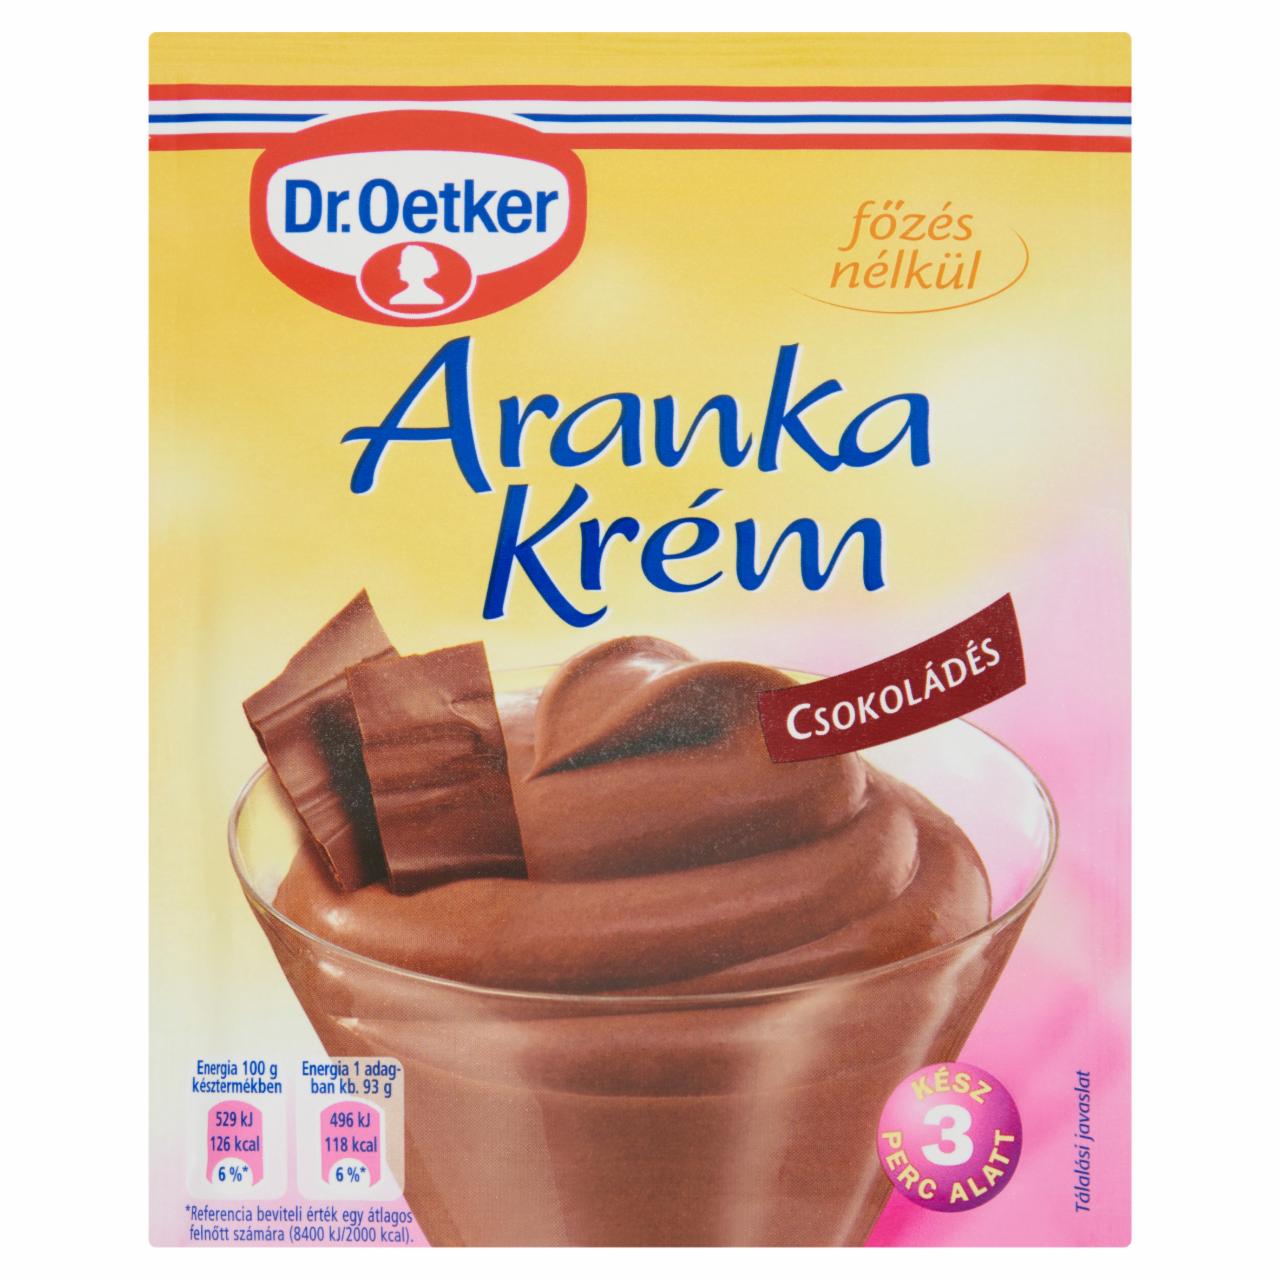 Képek - Dr. Oetker Aranka Krém csokoládés krémpor 75 g